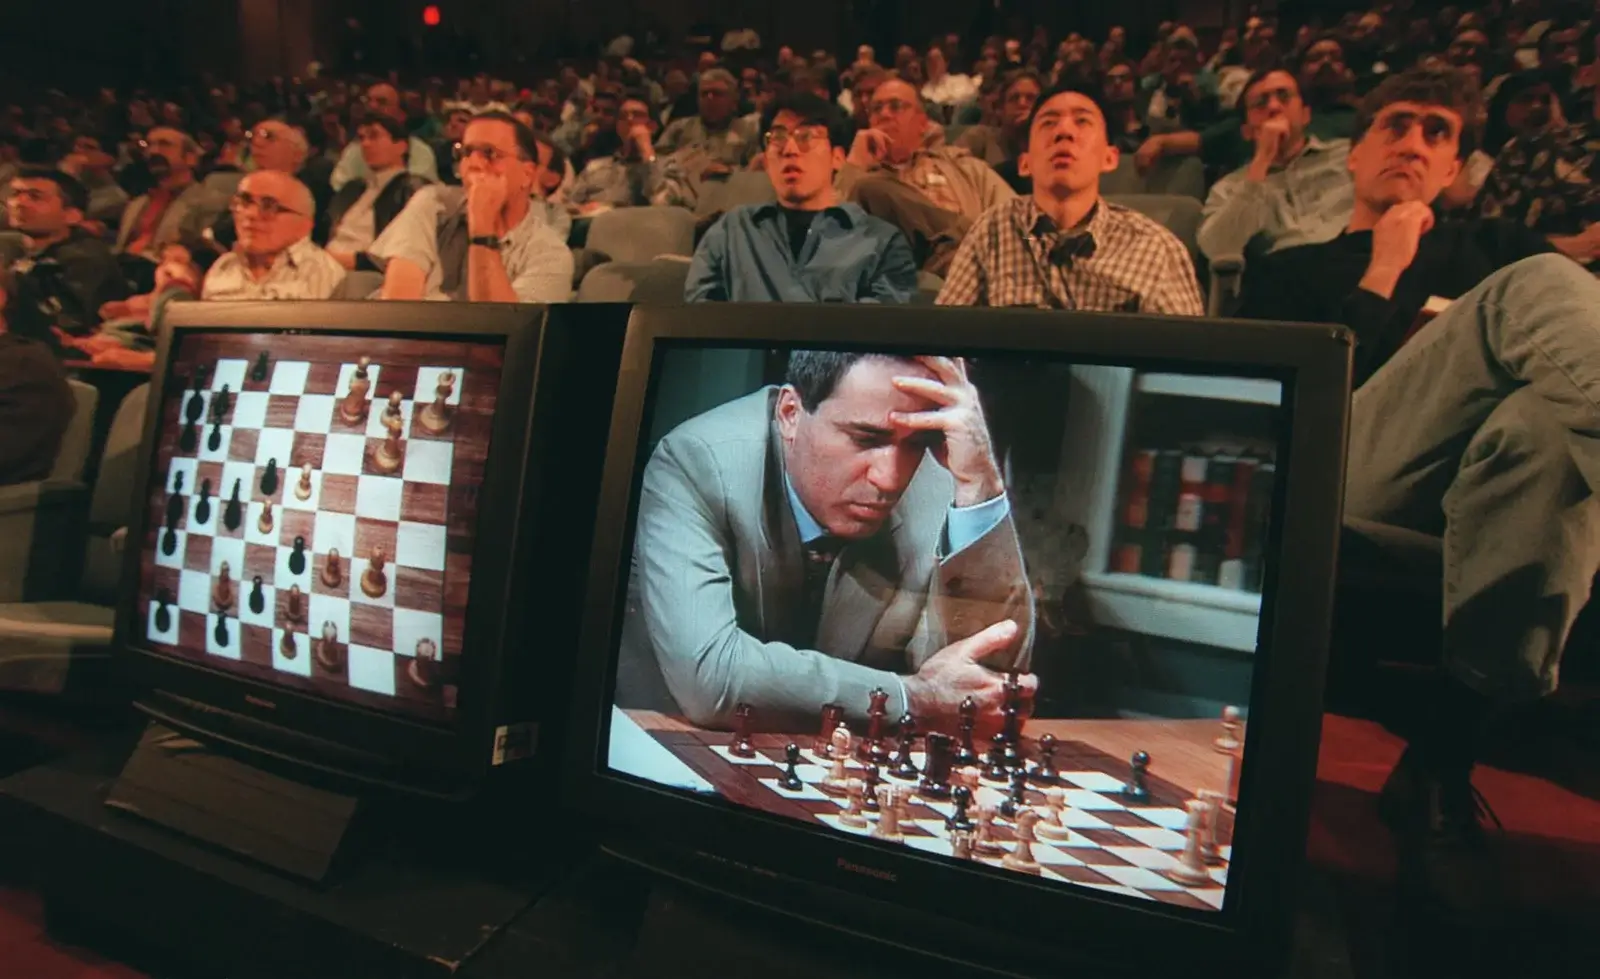 Homem jogando xadrez contra máquina.esse evento destacou o potencial das máquinas em superar os seres humanos em tarefas específicas e impulsionou ainda mais o desenvolvimento de sistemas de IA em diferentes domínios